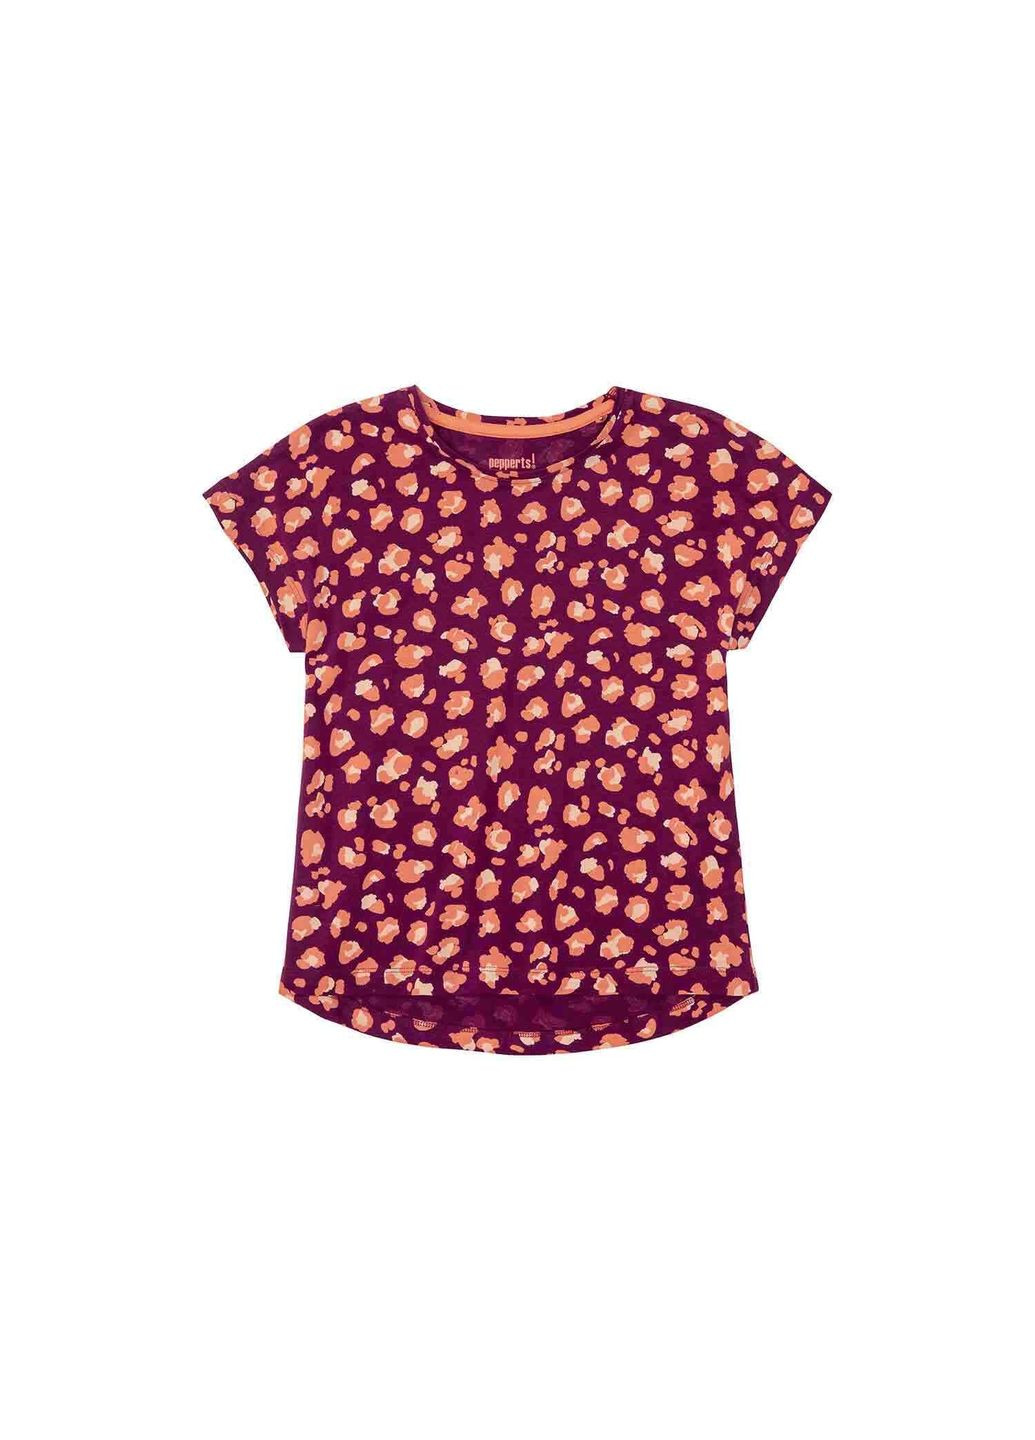 Фіолетова демісезонна футболка бавовняна з принтом для дівчинки 372032-1 фіолетовий Pepperts